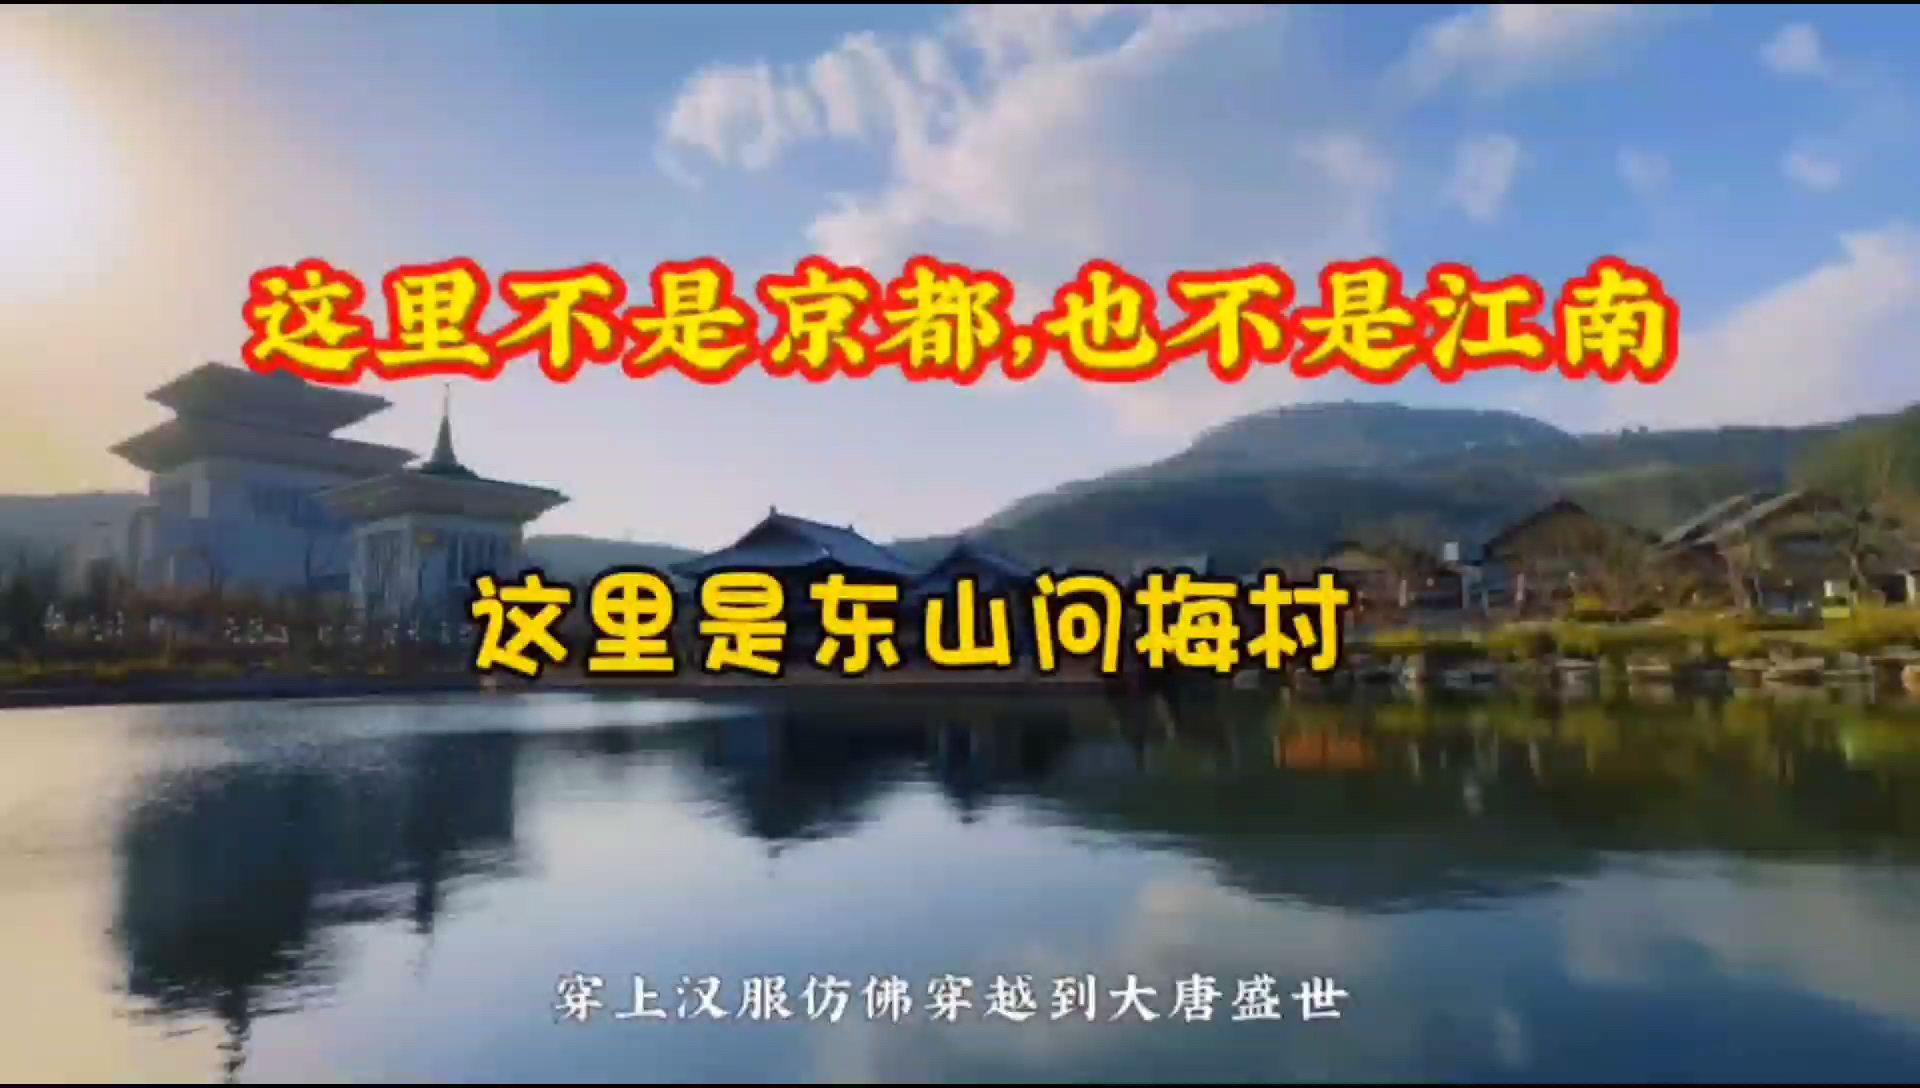 这里不是京都也不是江南，这里是东山问梅村，带你问梅村一日游，看看有哪些好玩的吧！#武汉周边游 #东山